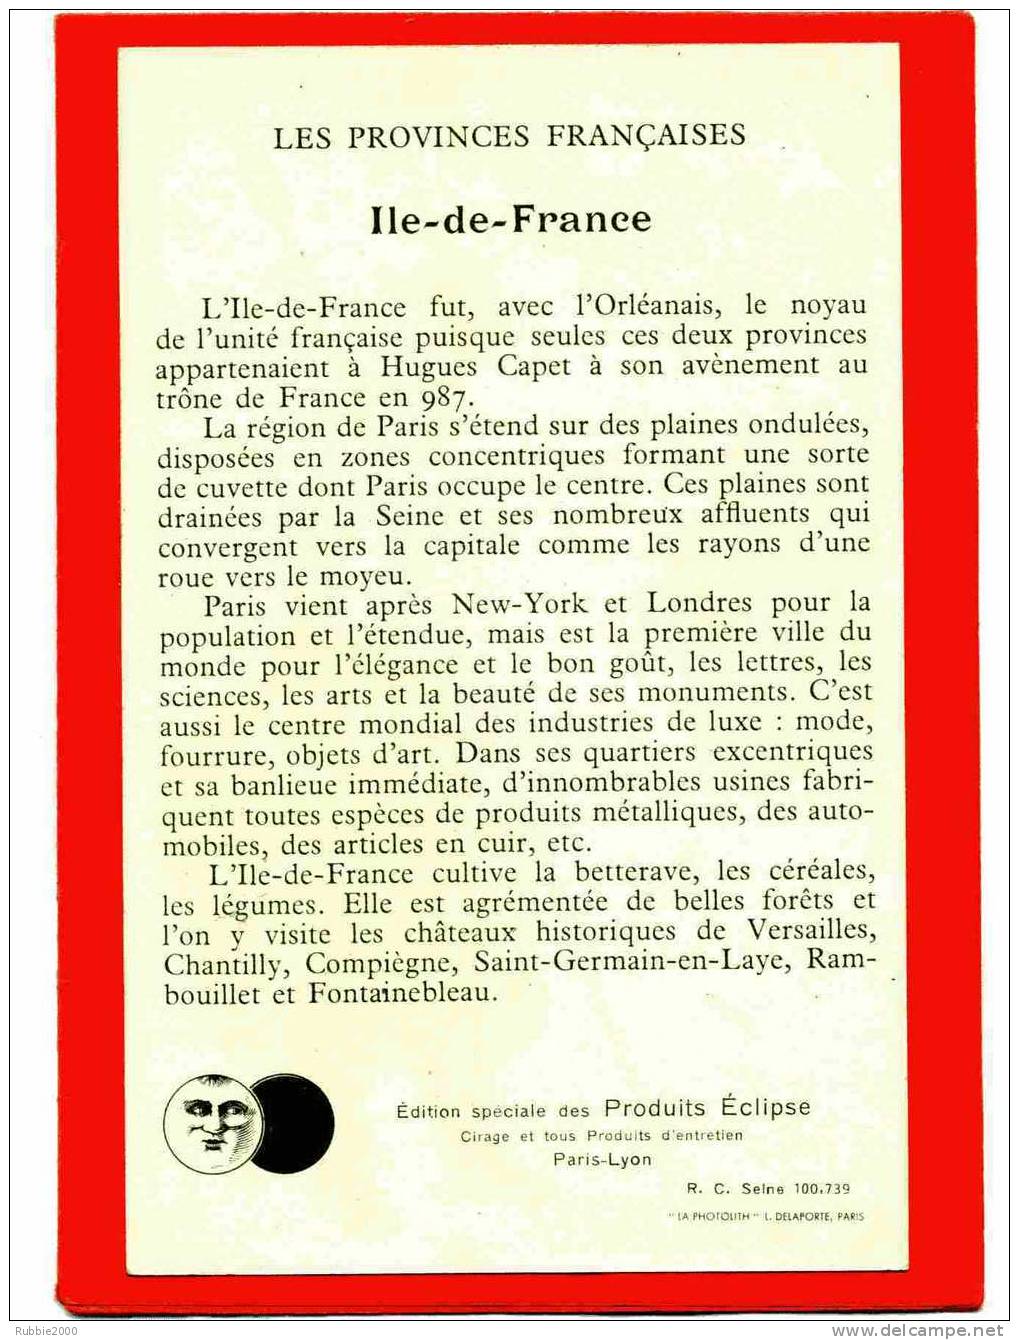 ILE DE FRANCE LES PROVINCES FRANCAISES CARTE PUBLICITAIRE CIRAGE PRODUITS ECLIPSE CARTE EN TRES BON ETAT - Ile-de-France